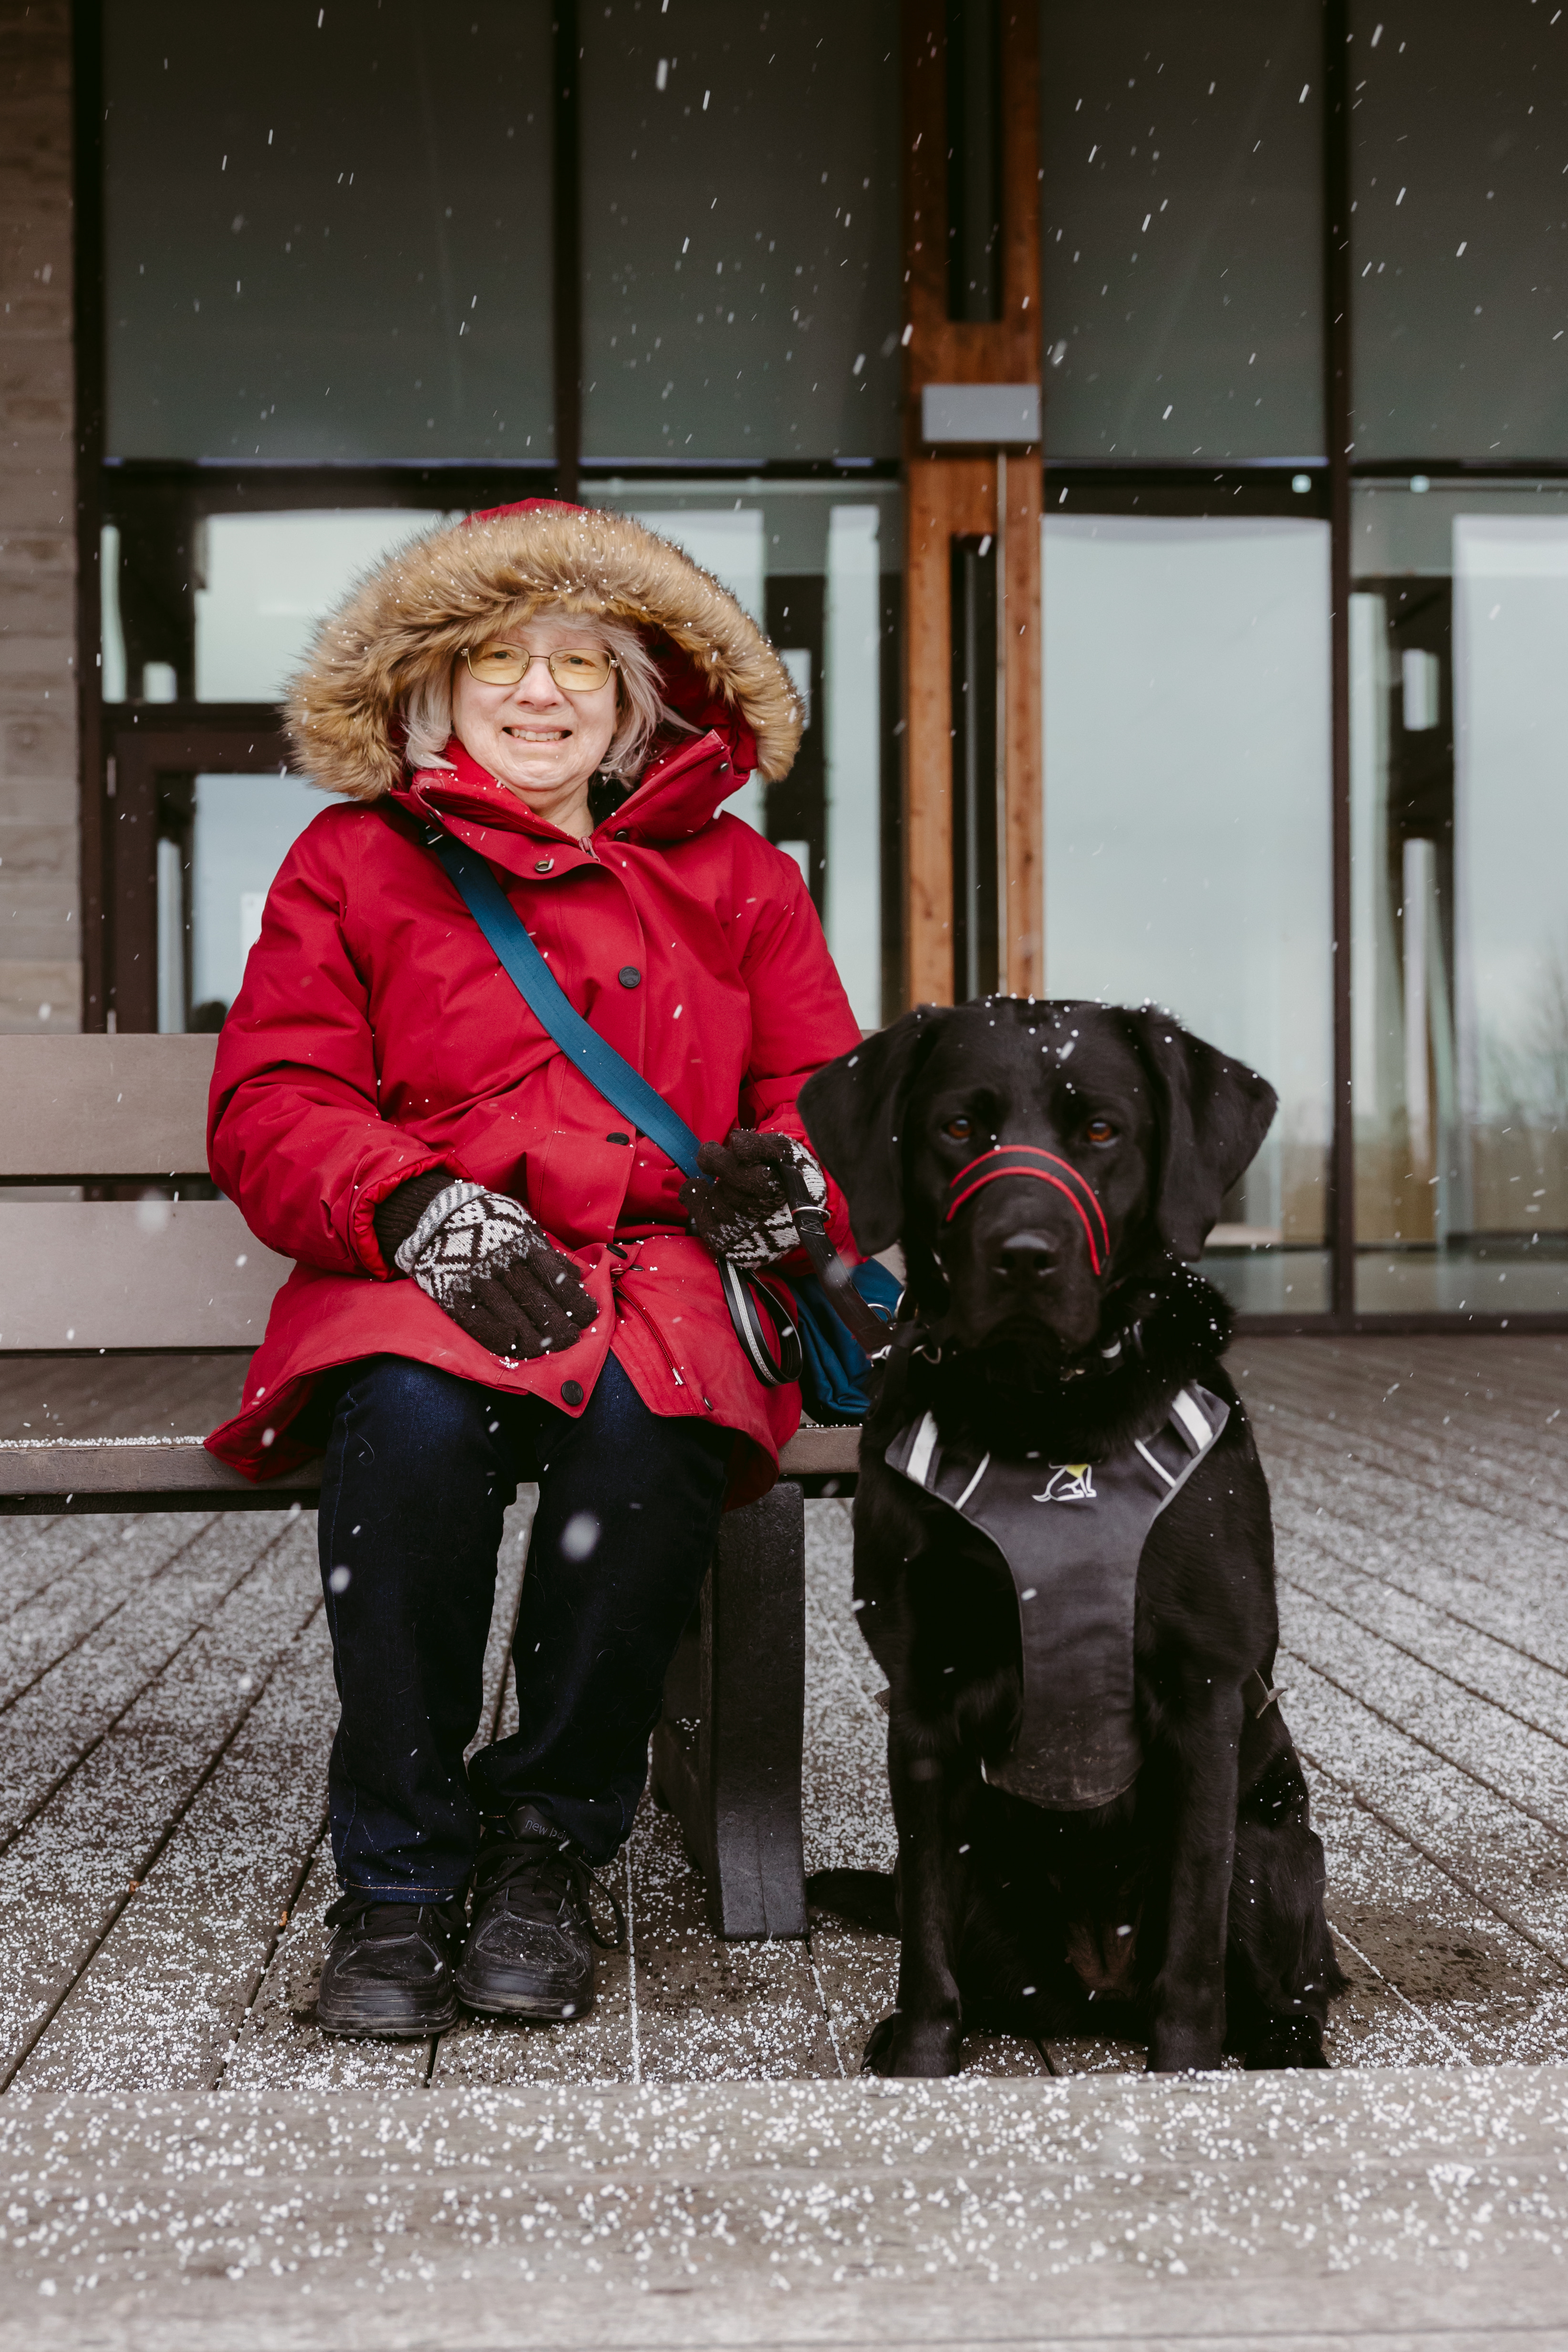 À l’extérieur : Cheri portant un blouson d’hiver rouge et des gants sourit, assise sur un banc, et son chien-guide, Sassy, une chienne noire munie d’un harnais est assis sur le sol à sa droite. Il neige légèrement.